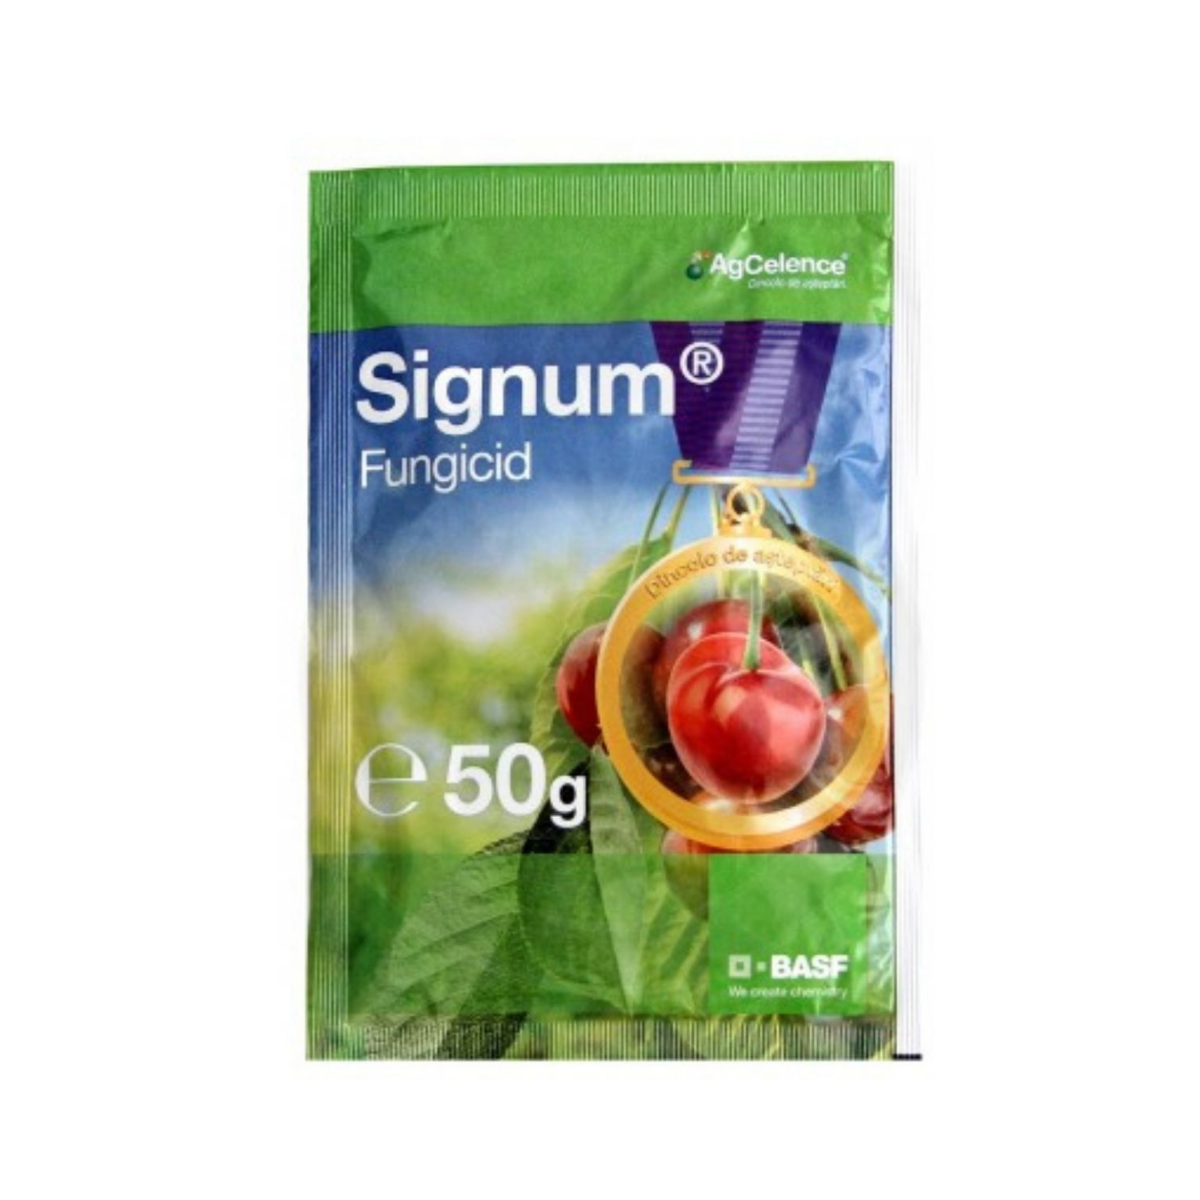 Fungicide - Fungicid pentru legume si pomi fructiferi, 50 grame, Signum,  BASF, hectarul.ro